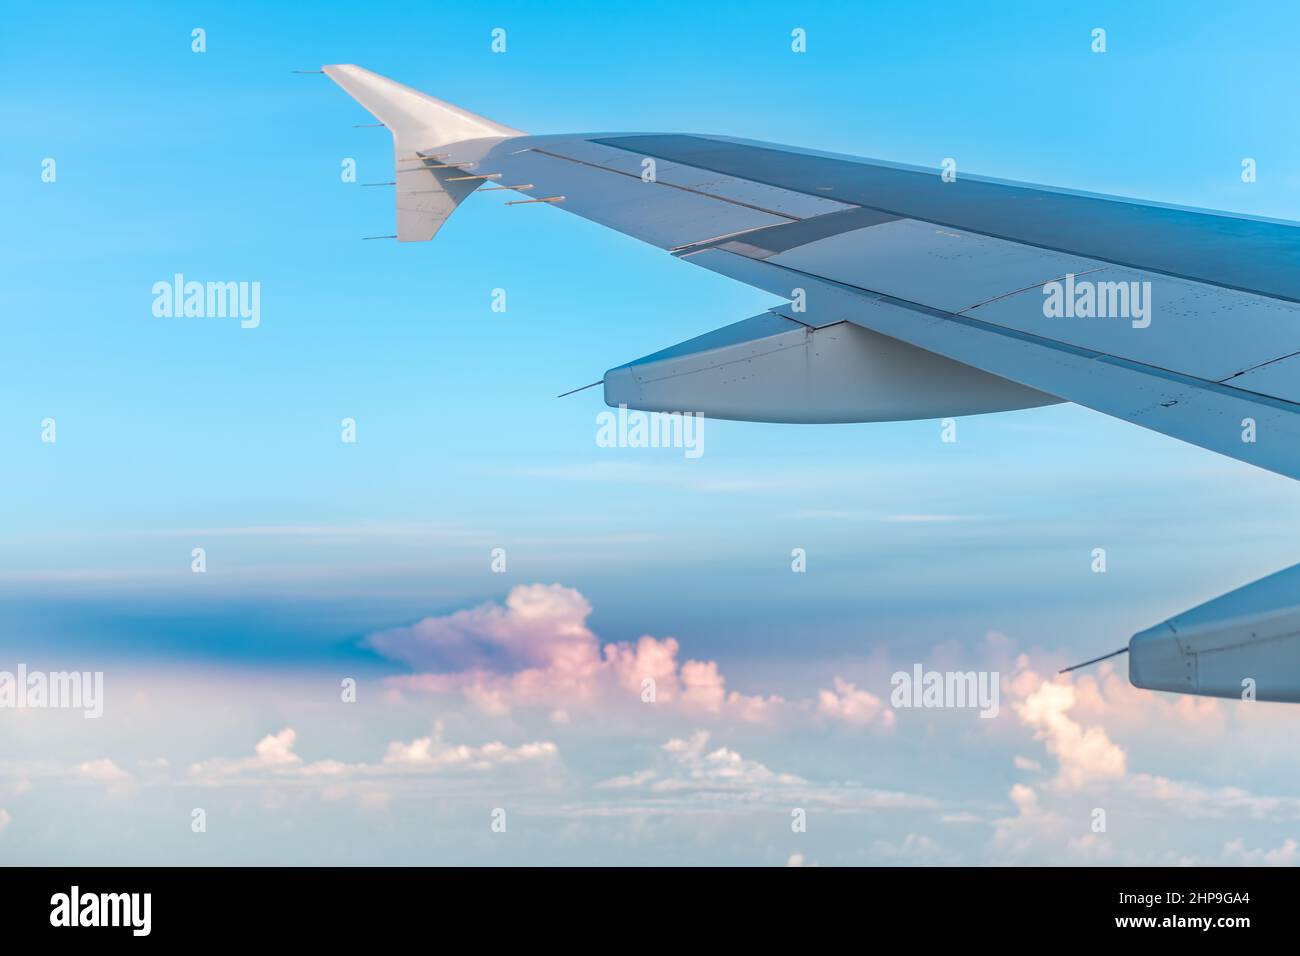 Flugzeug, das pov aus dem Fenster aus der Nähe von Fort Myers fliegt, mit einer Staubwolke aus der Sahara, die im Südwesten Flors zu einer Verschmutzung durch Dunst und Allergien führt Stockfoto